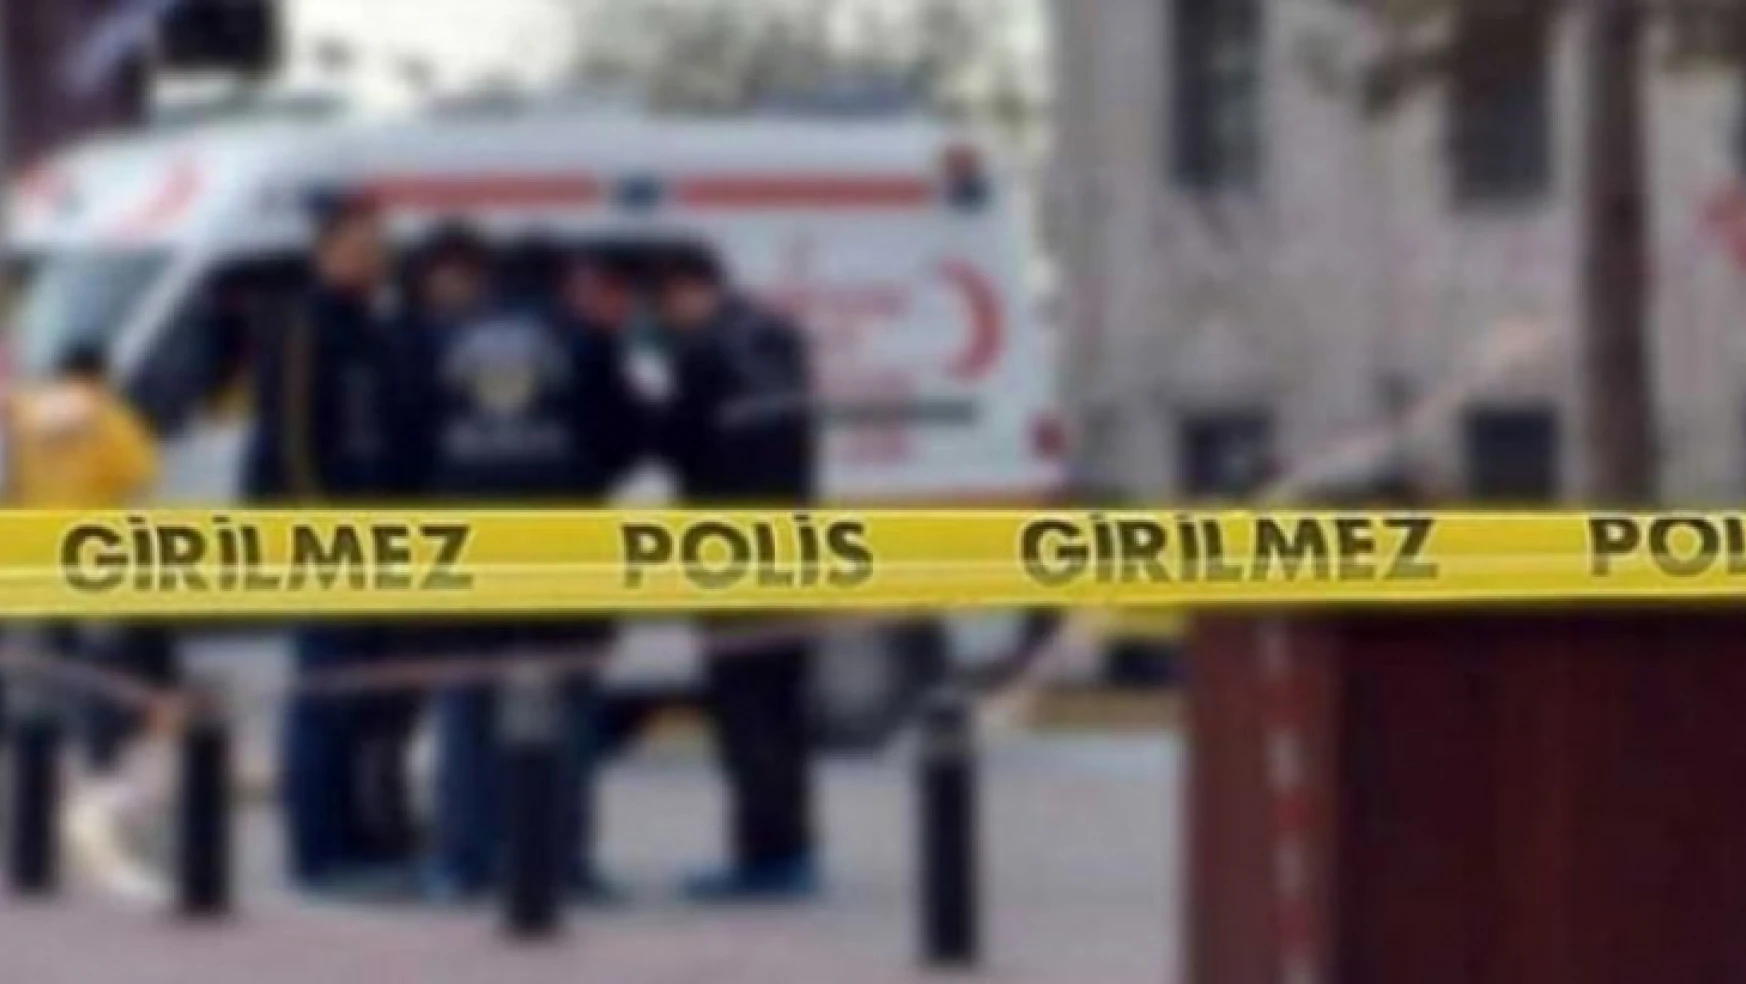 Malatya'da Cinayet, 2 kişi hayatını kaybetti